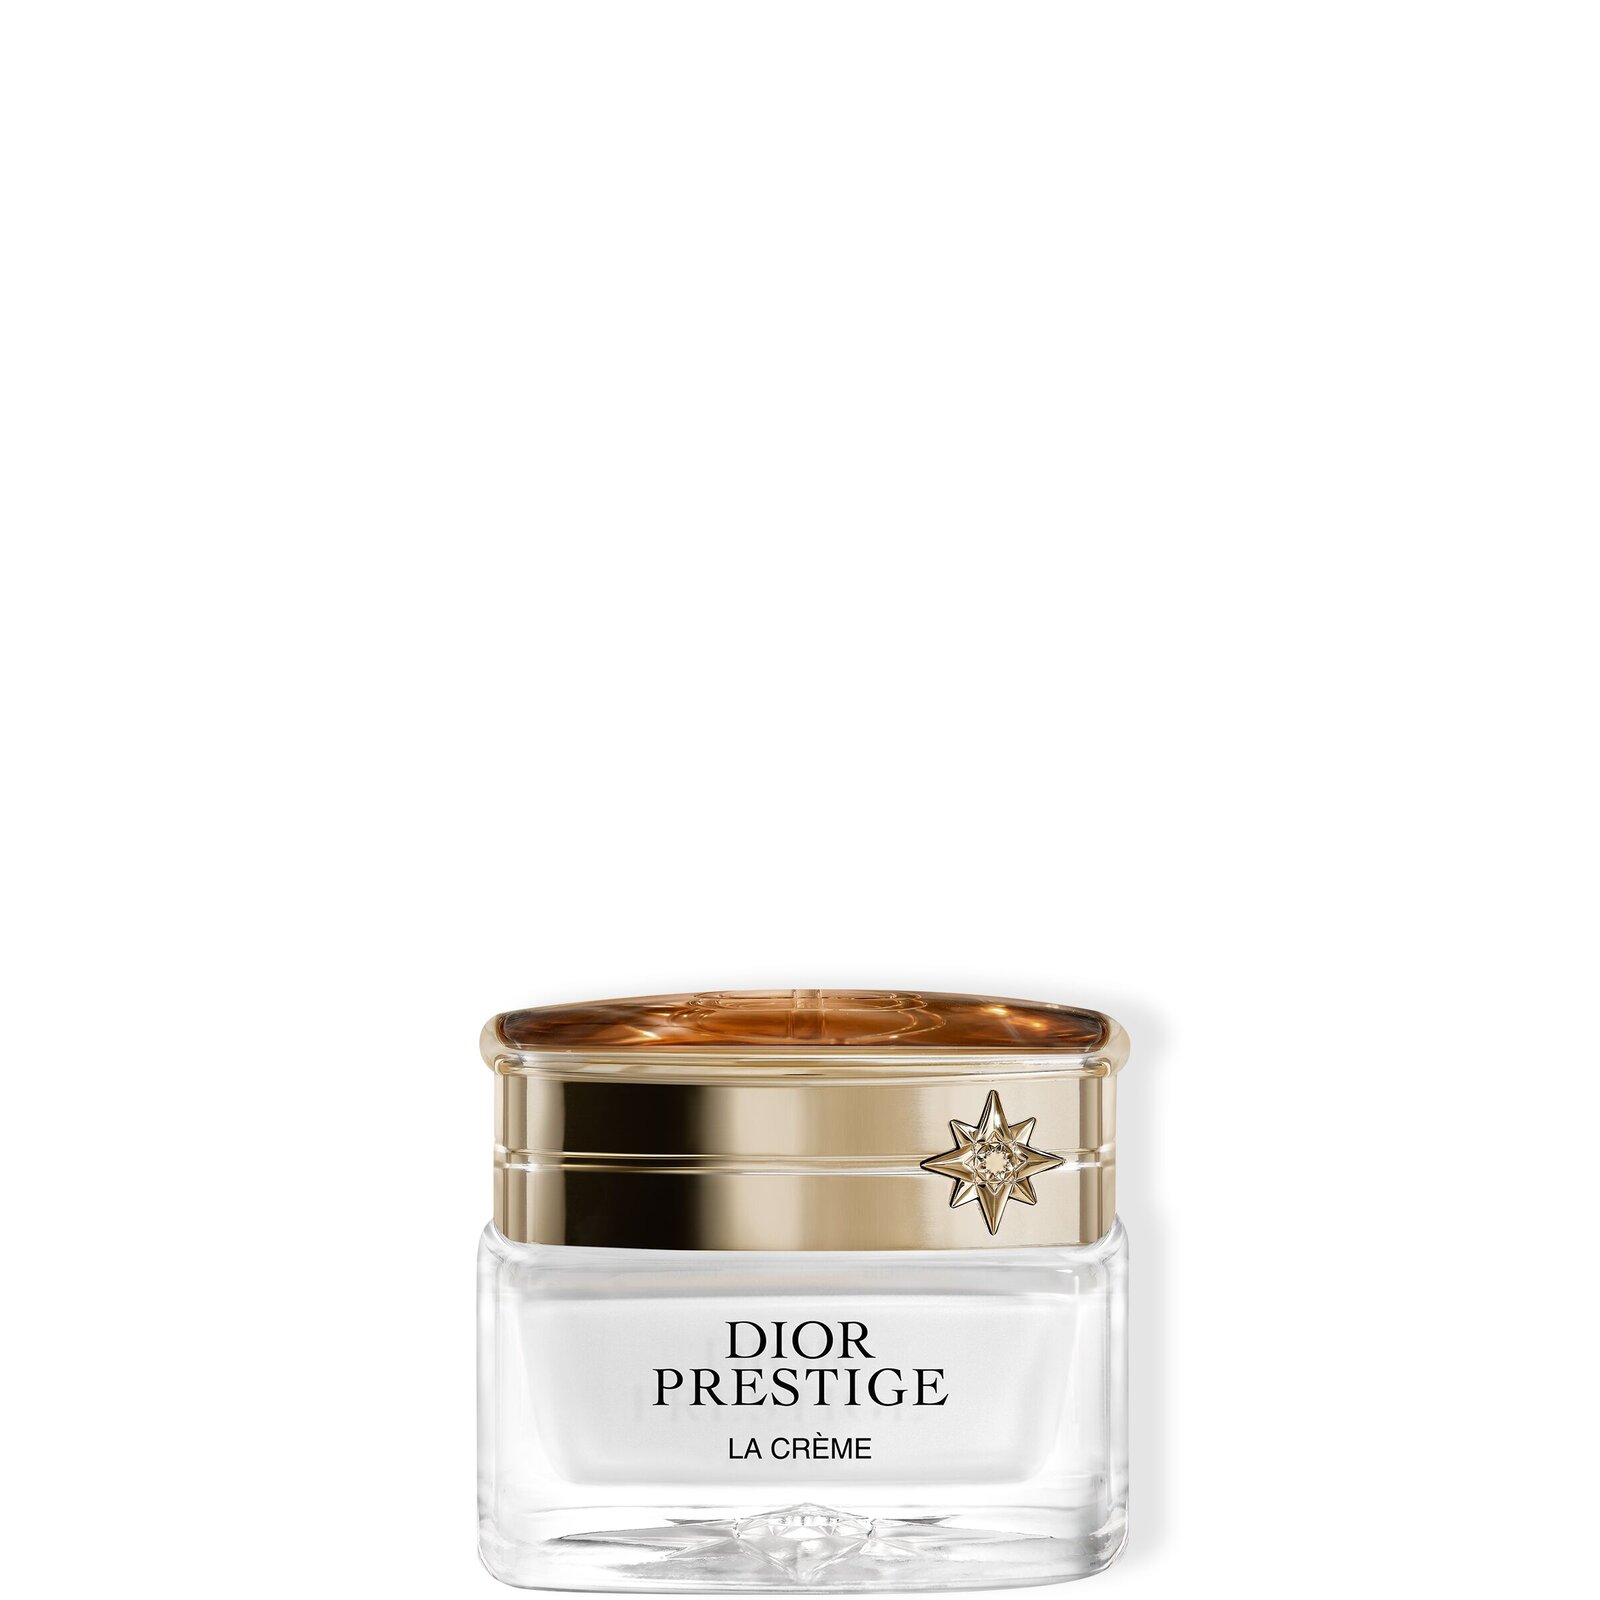 Dior Prestige La Crème Texture Riche Крем с насыщенной текстурой для лица, шеи и зоны декольте